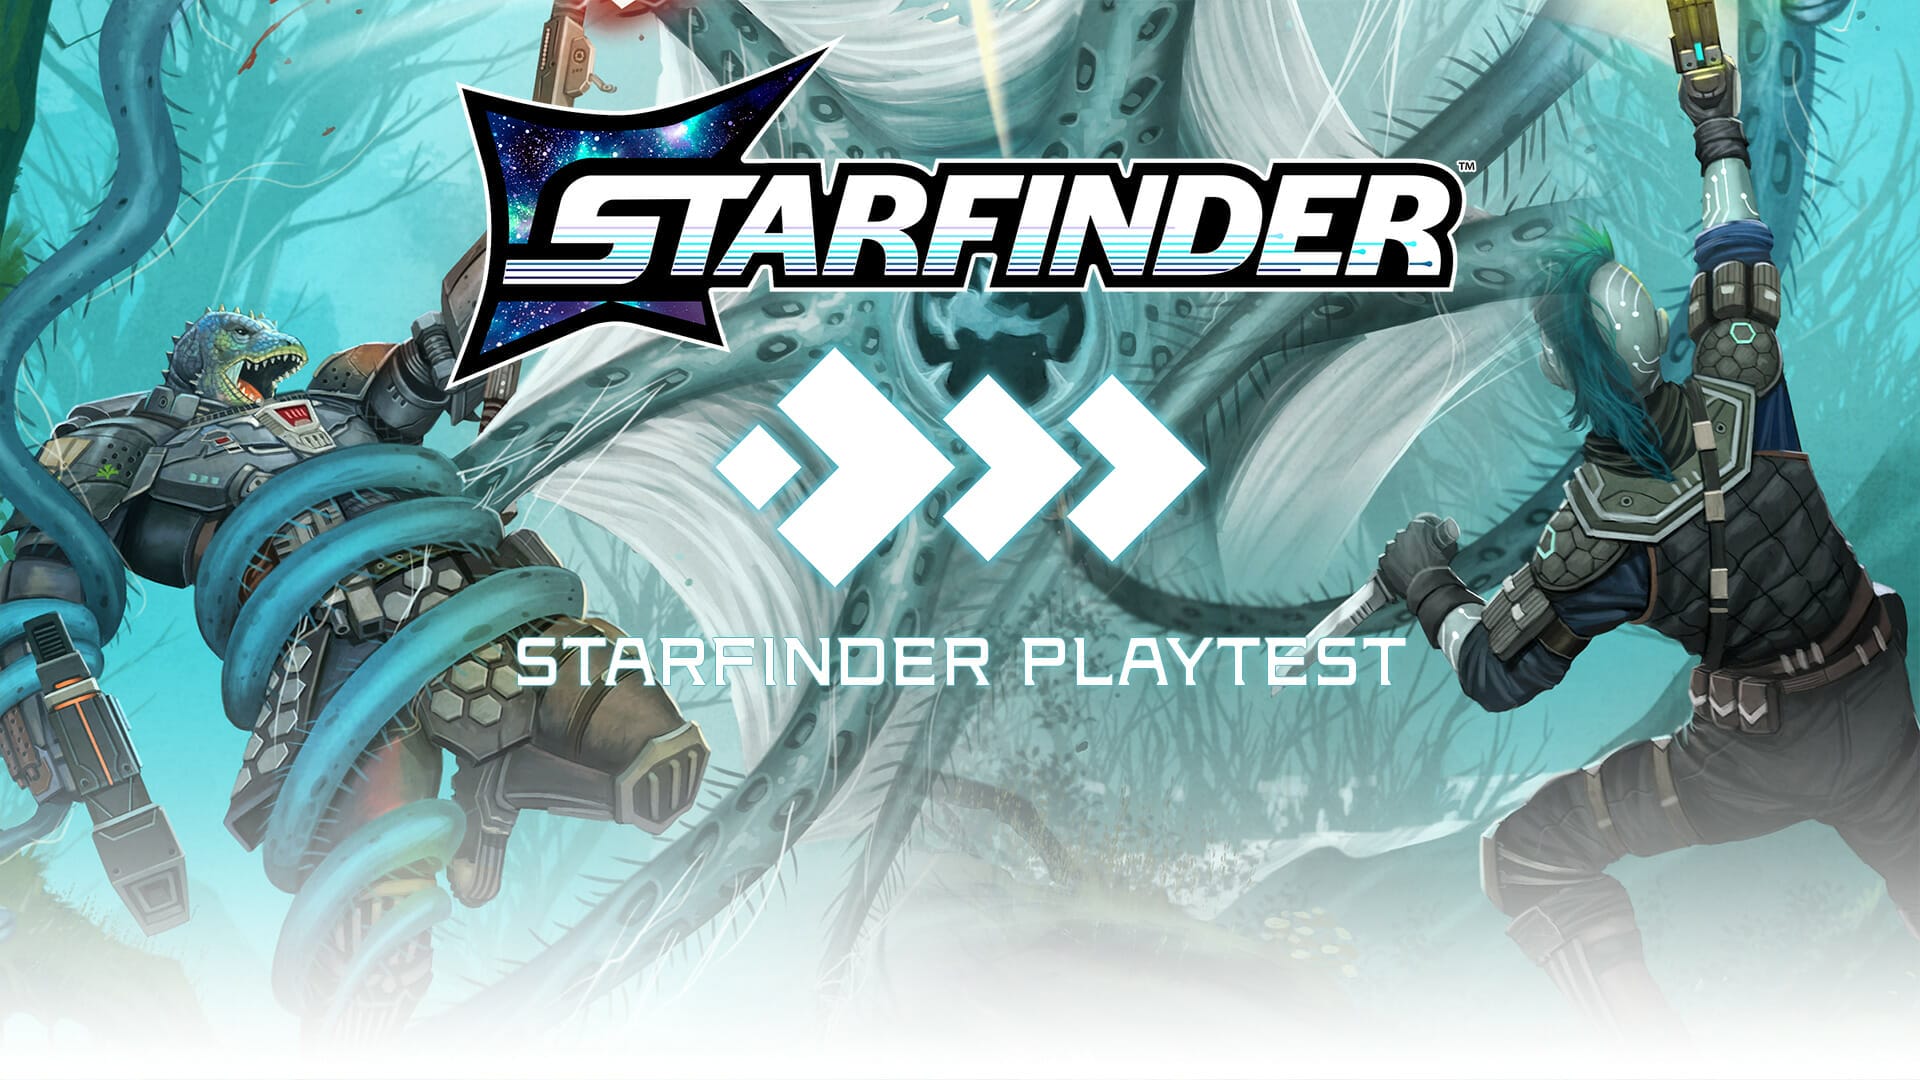 Starfinder heroes in a battle